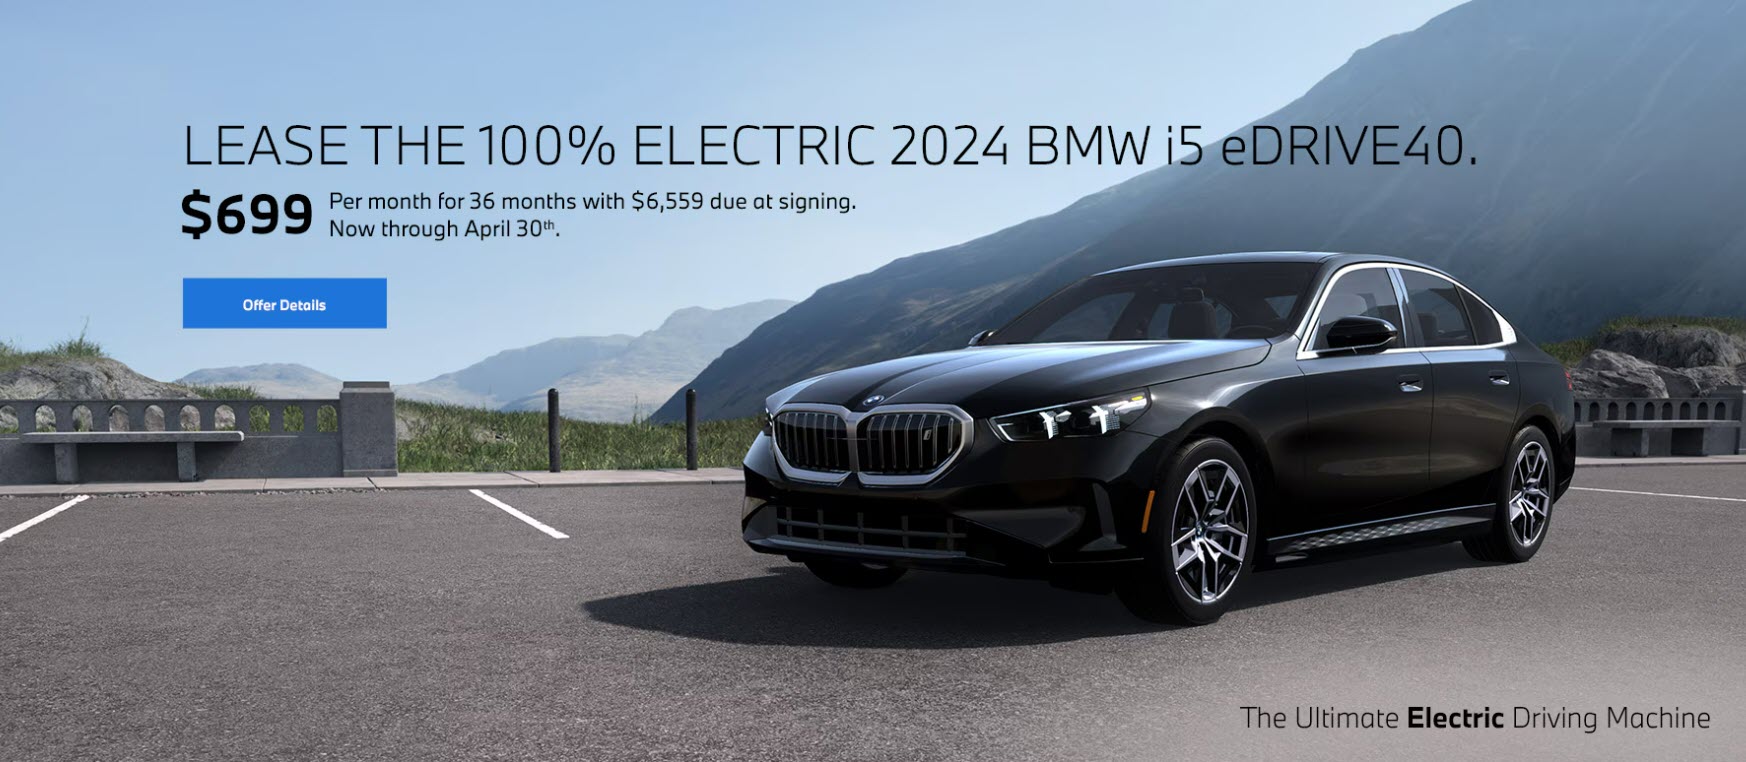 2024 BMW i5 eDRIVE 40